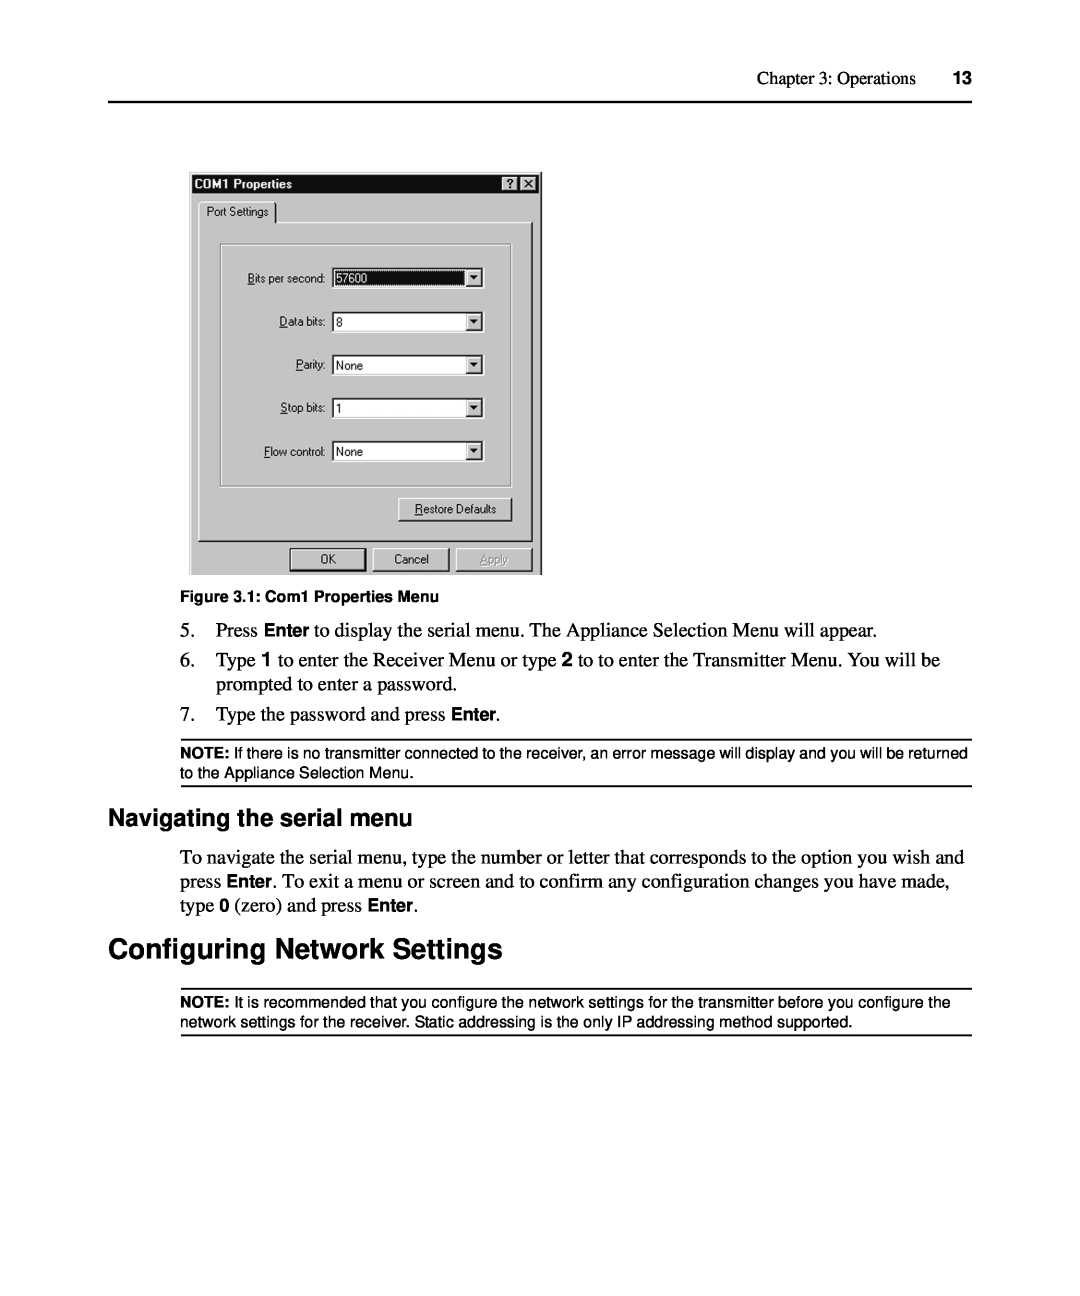 Avocent LongView IP manual Configuring Network Settings, Navigating the serial menu 